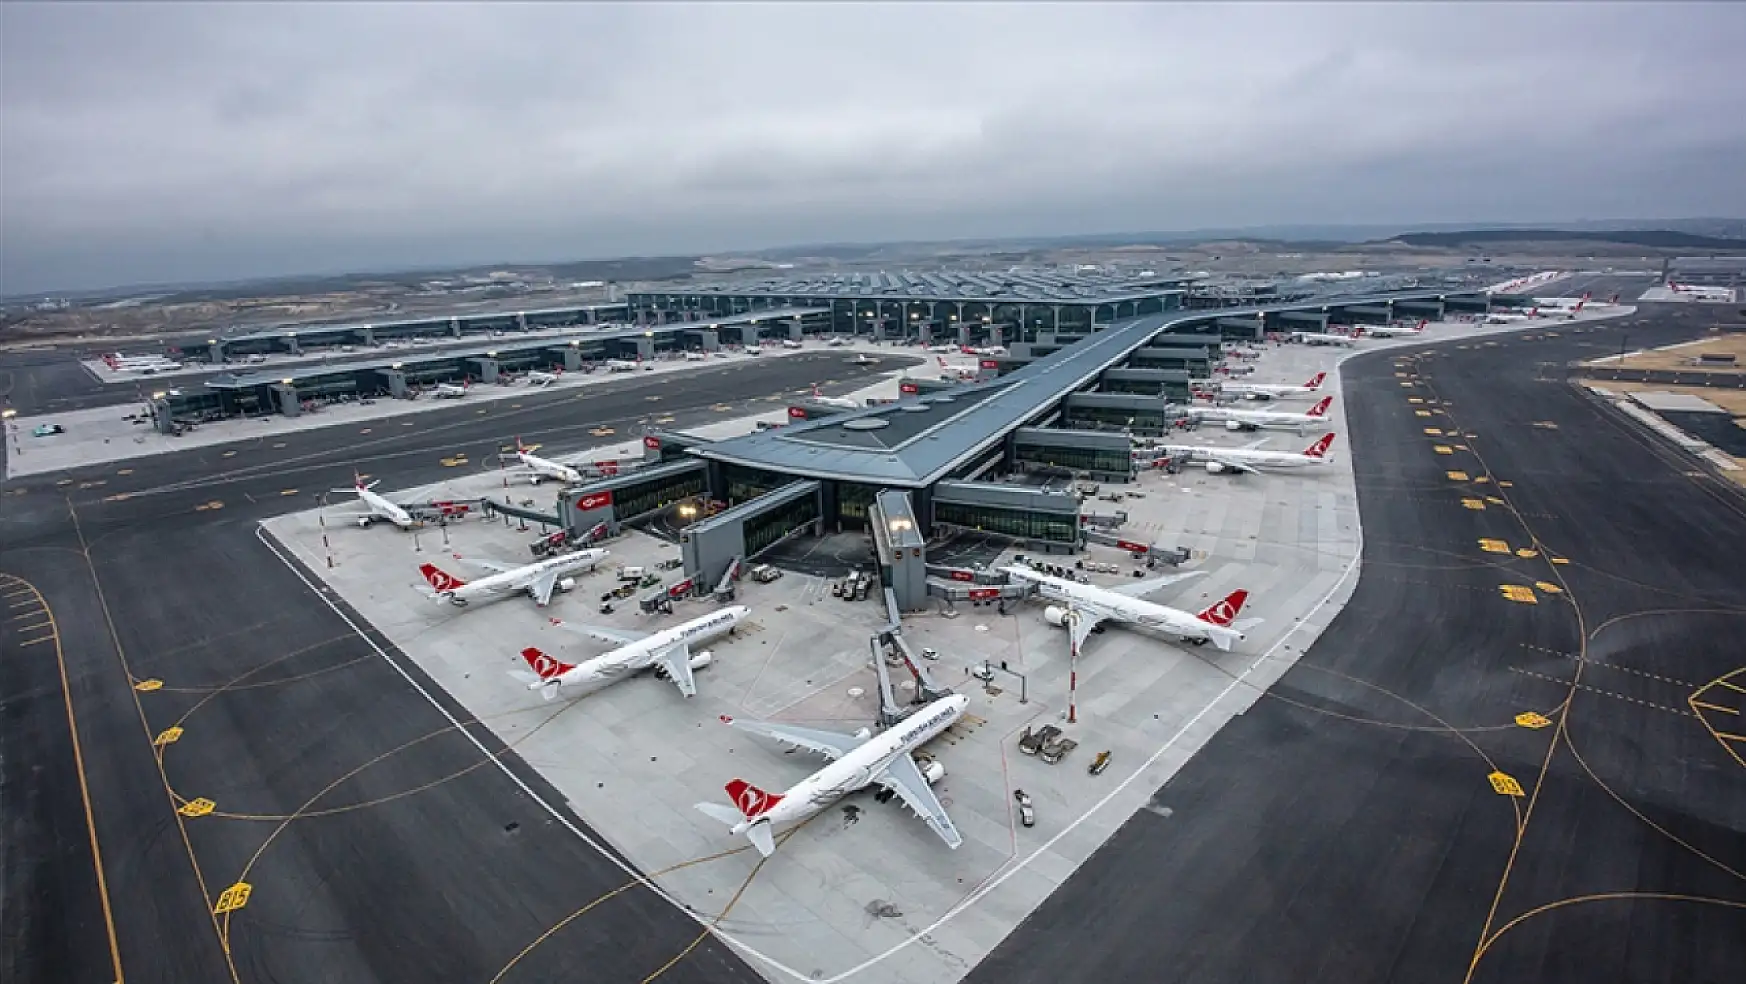 İstanbul Havalimanı'nı 4,5 yılda yaklaşık 1,5 milyon uçak kullandı